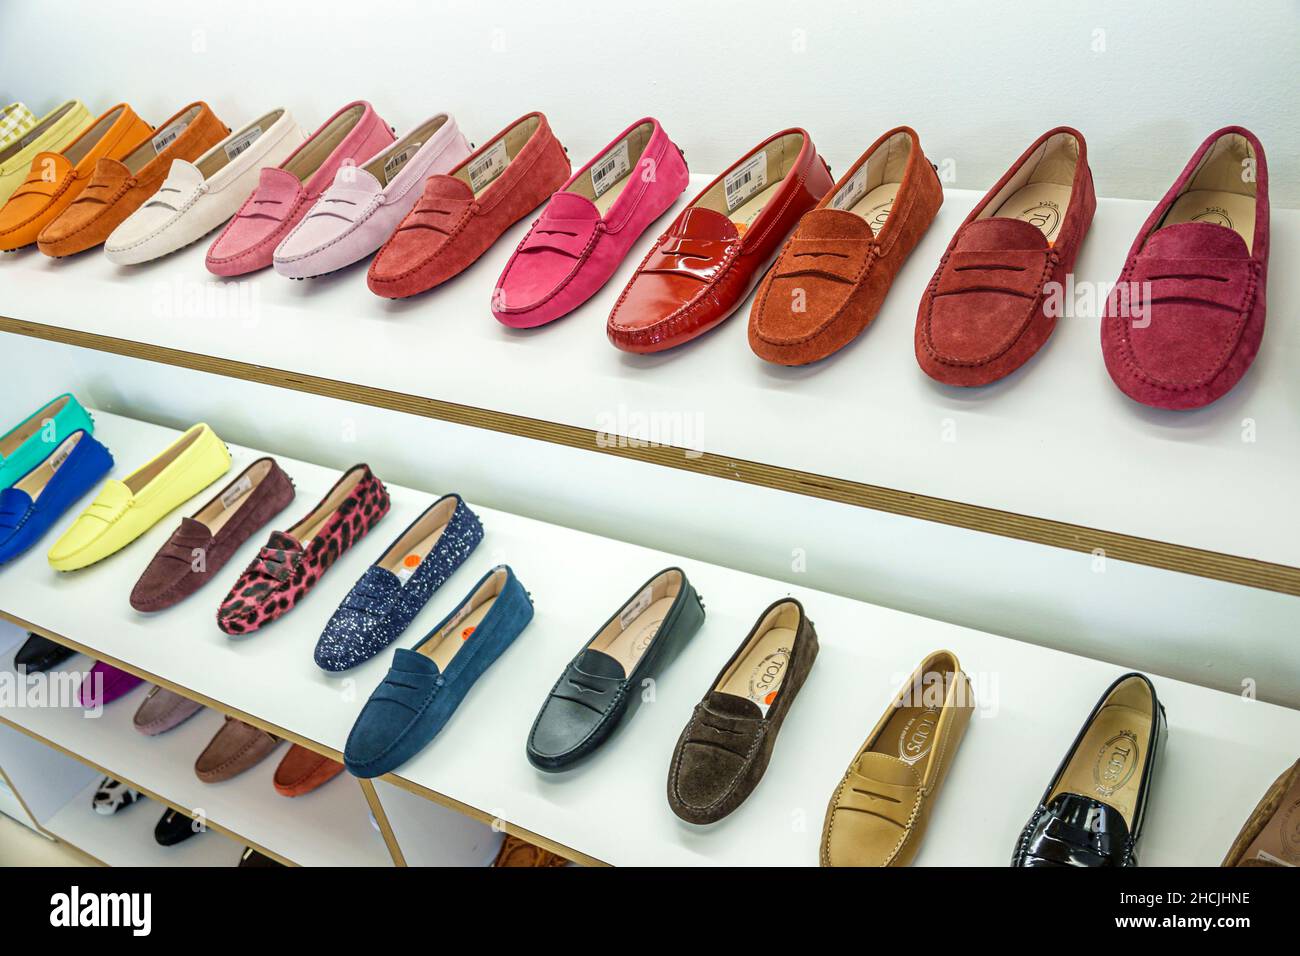 قنصلية إمبراطورية مبادرة الكاحل صراحة عباءة zapatos tods mujer outlet -  lanecountyshine.com